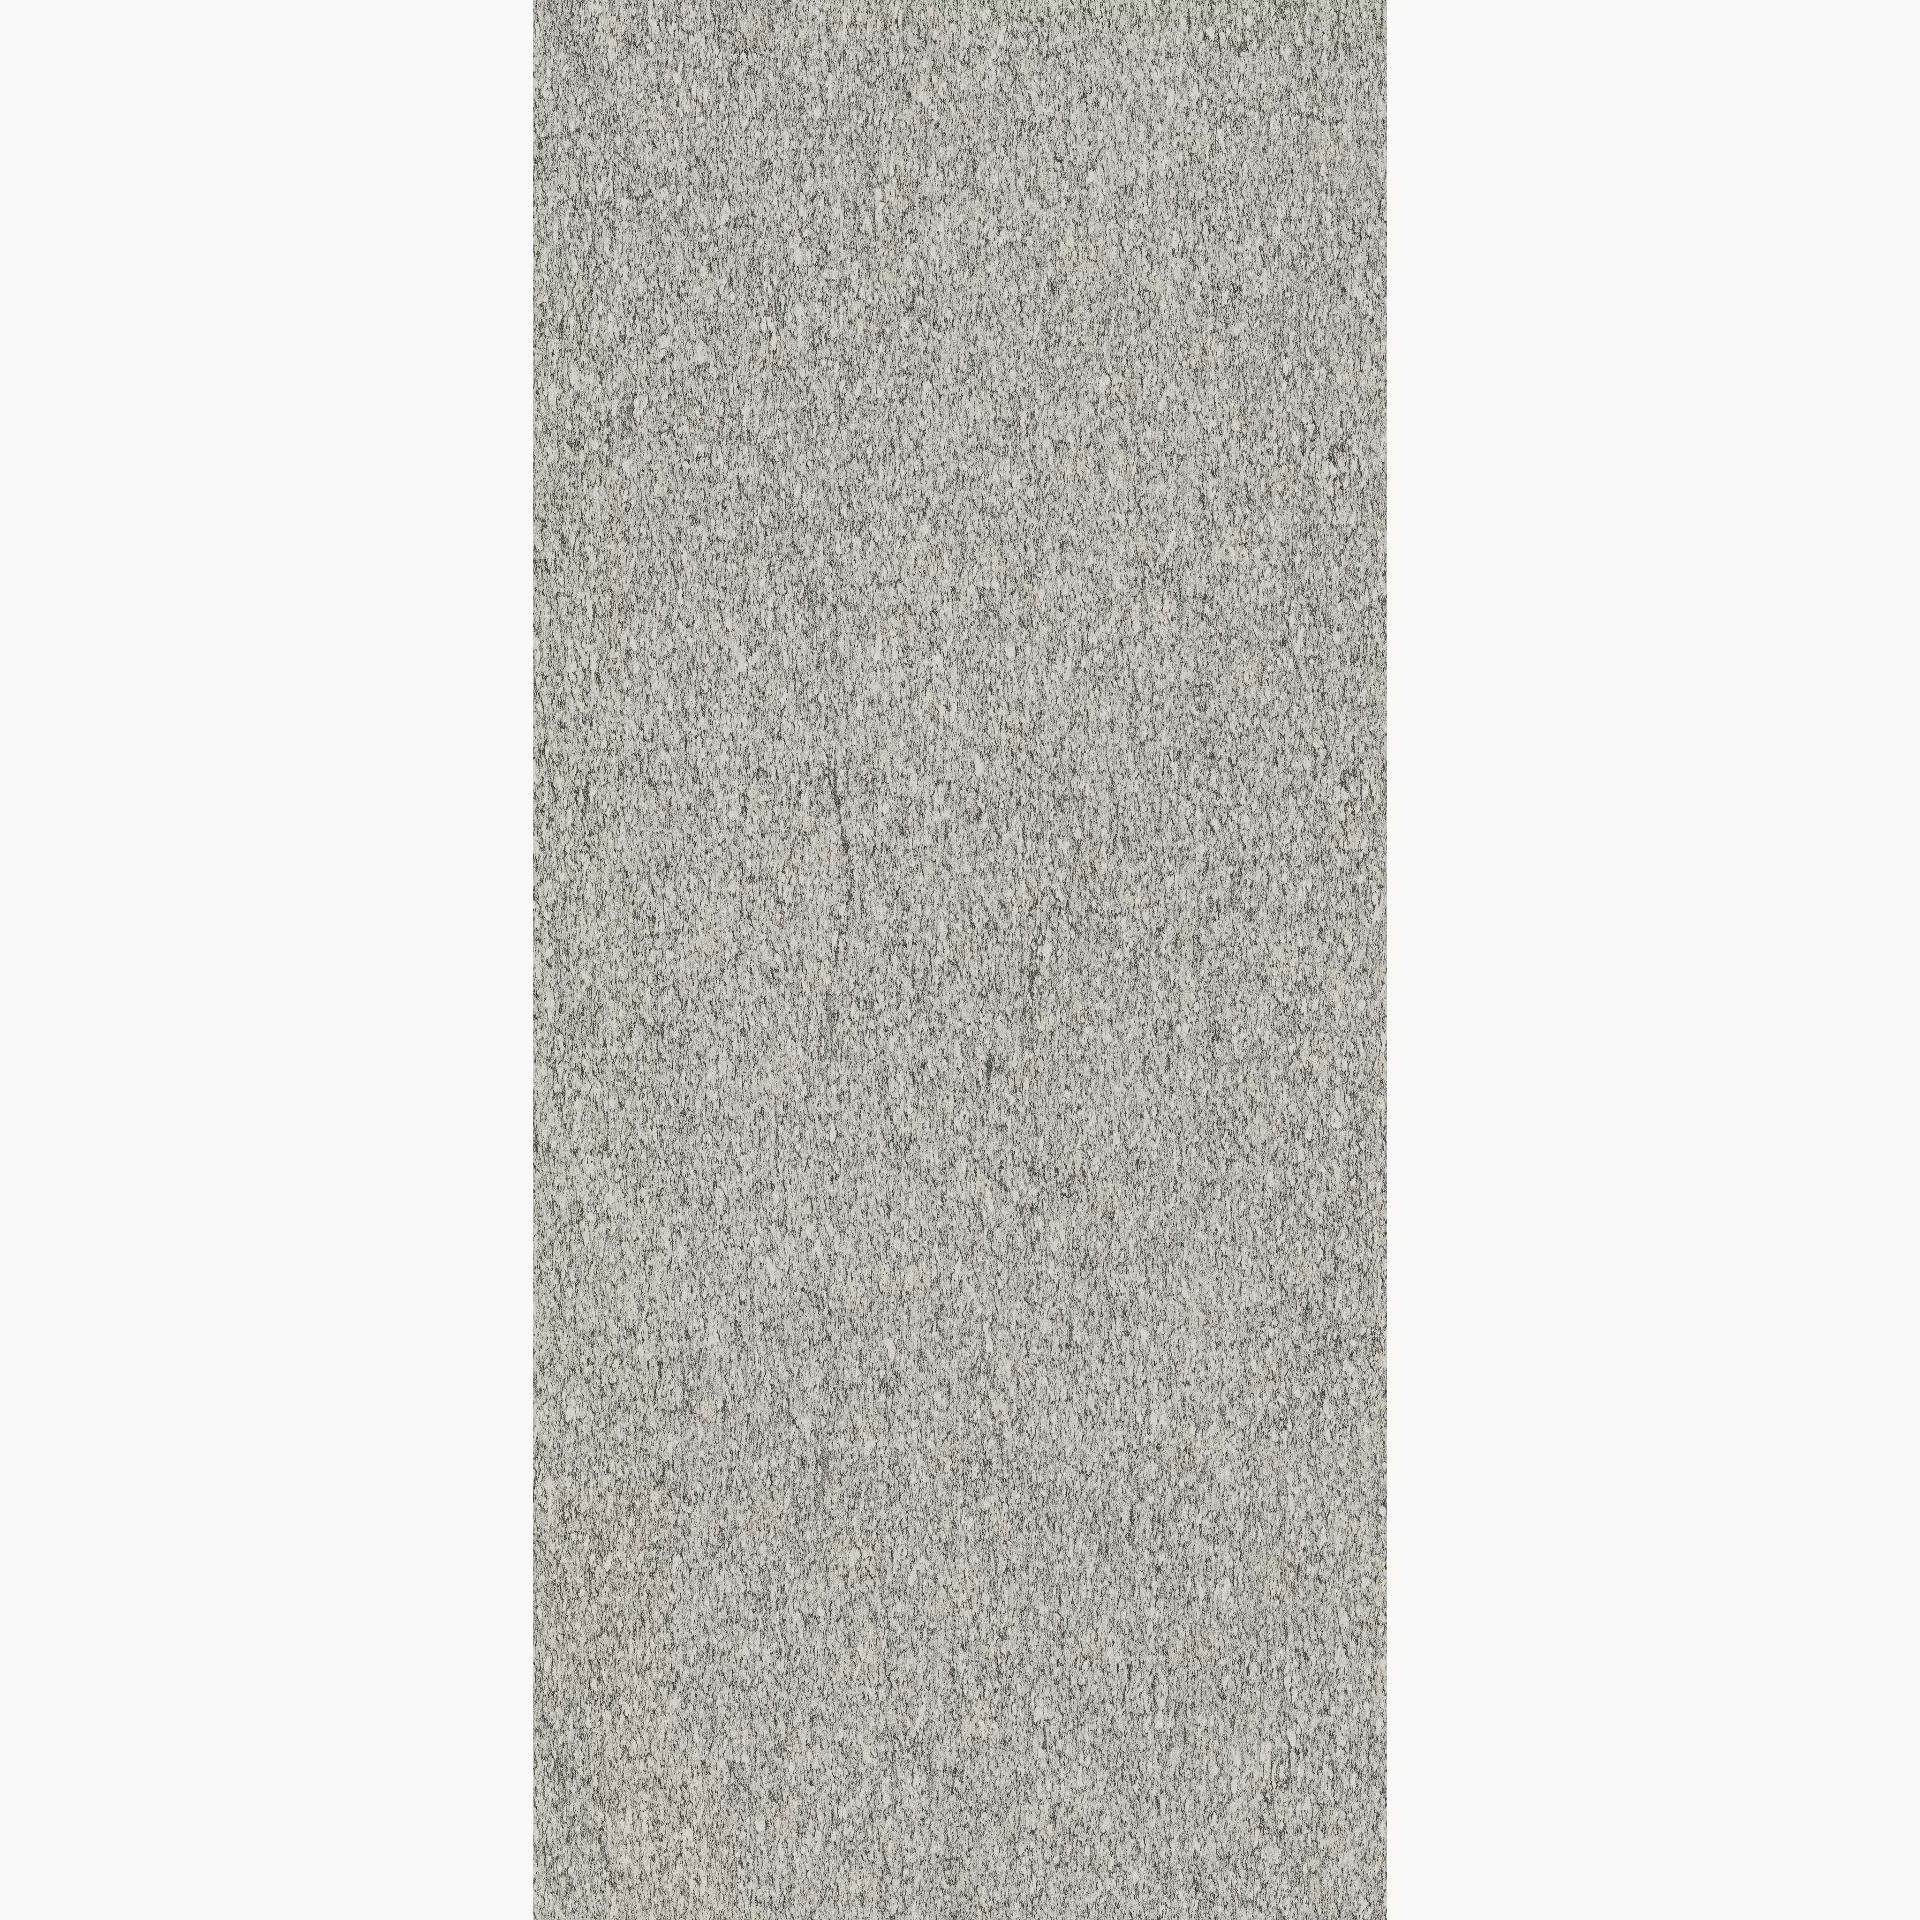 Florim Biotech Serizzo Stone Naturale – Matt Serizzo Stone 778855 matt natur 80x180cm rektifiziert 9mm